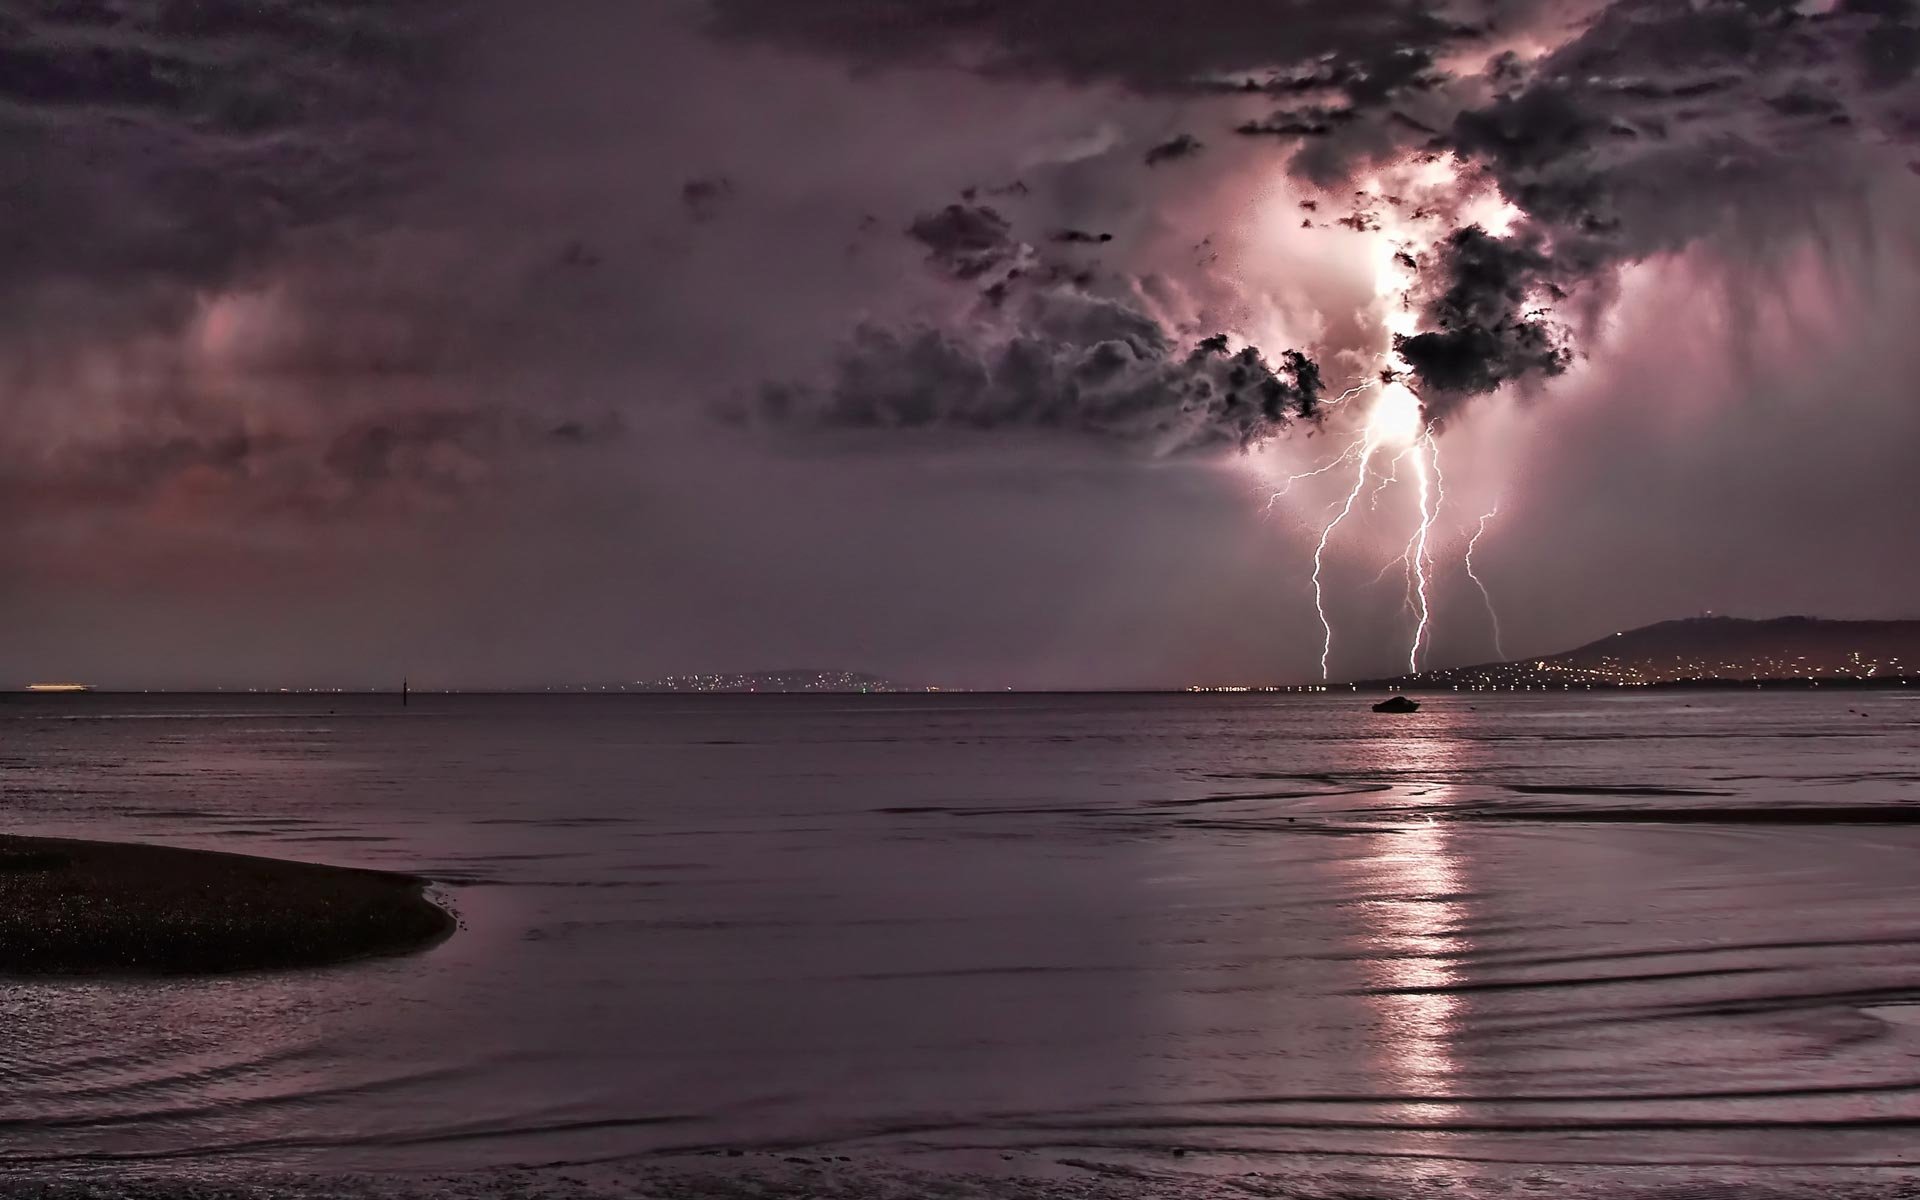 Lightning Storm Images Download Free - PixelsTalk.Net